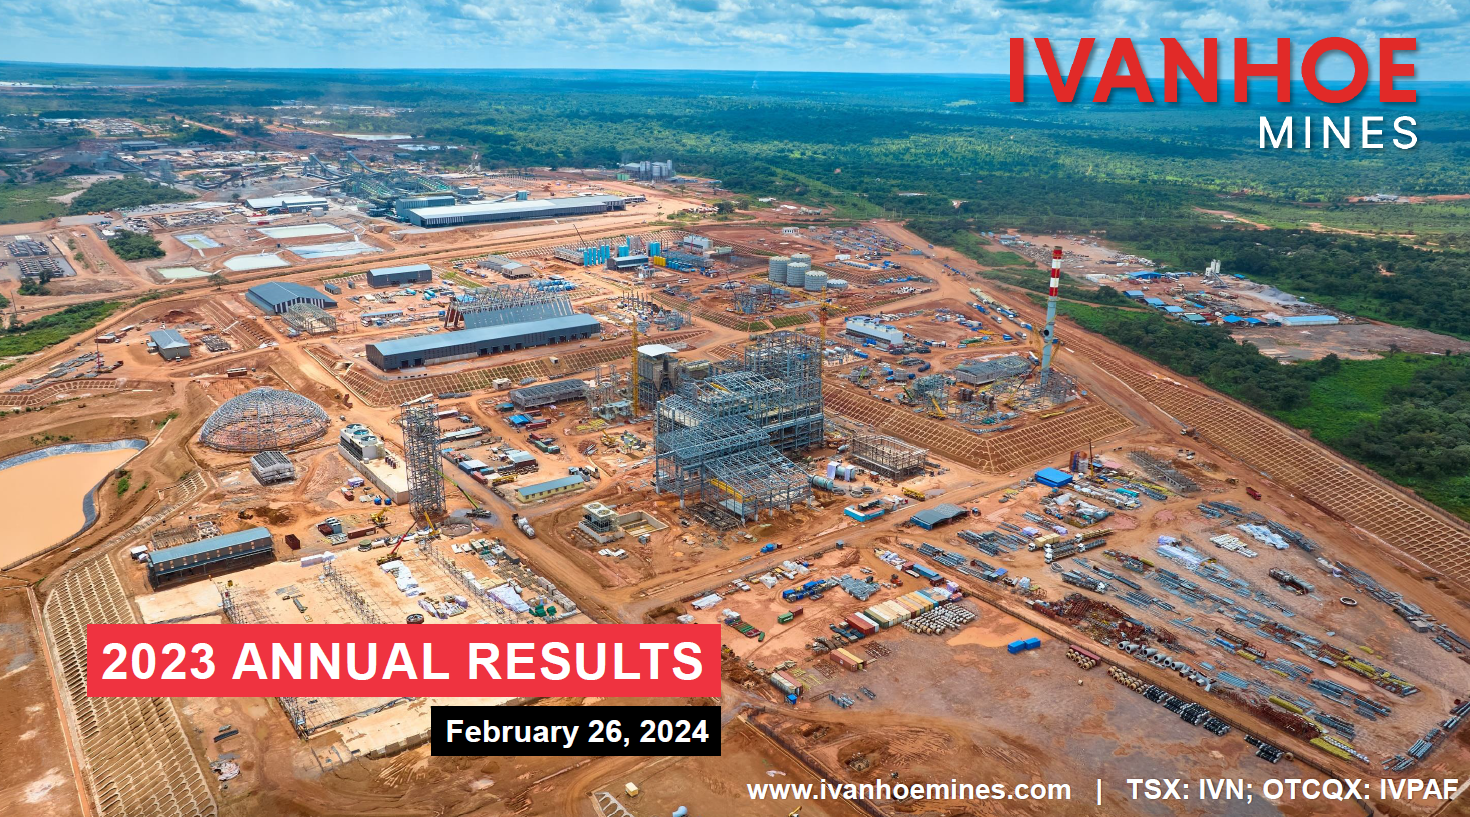 Résultats annuels 2023 d’Ivanhoe Mines, 26 février 2024